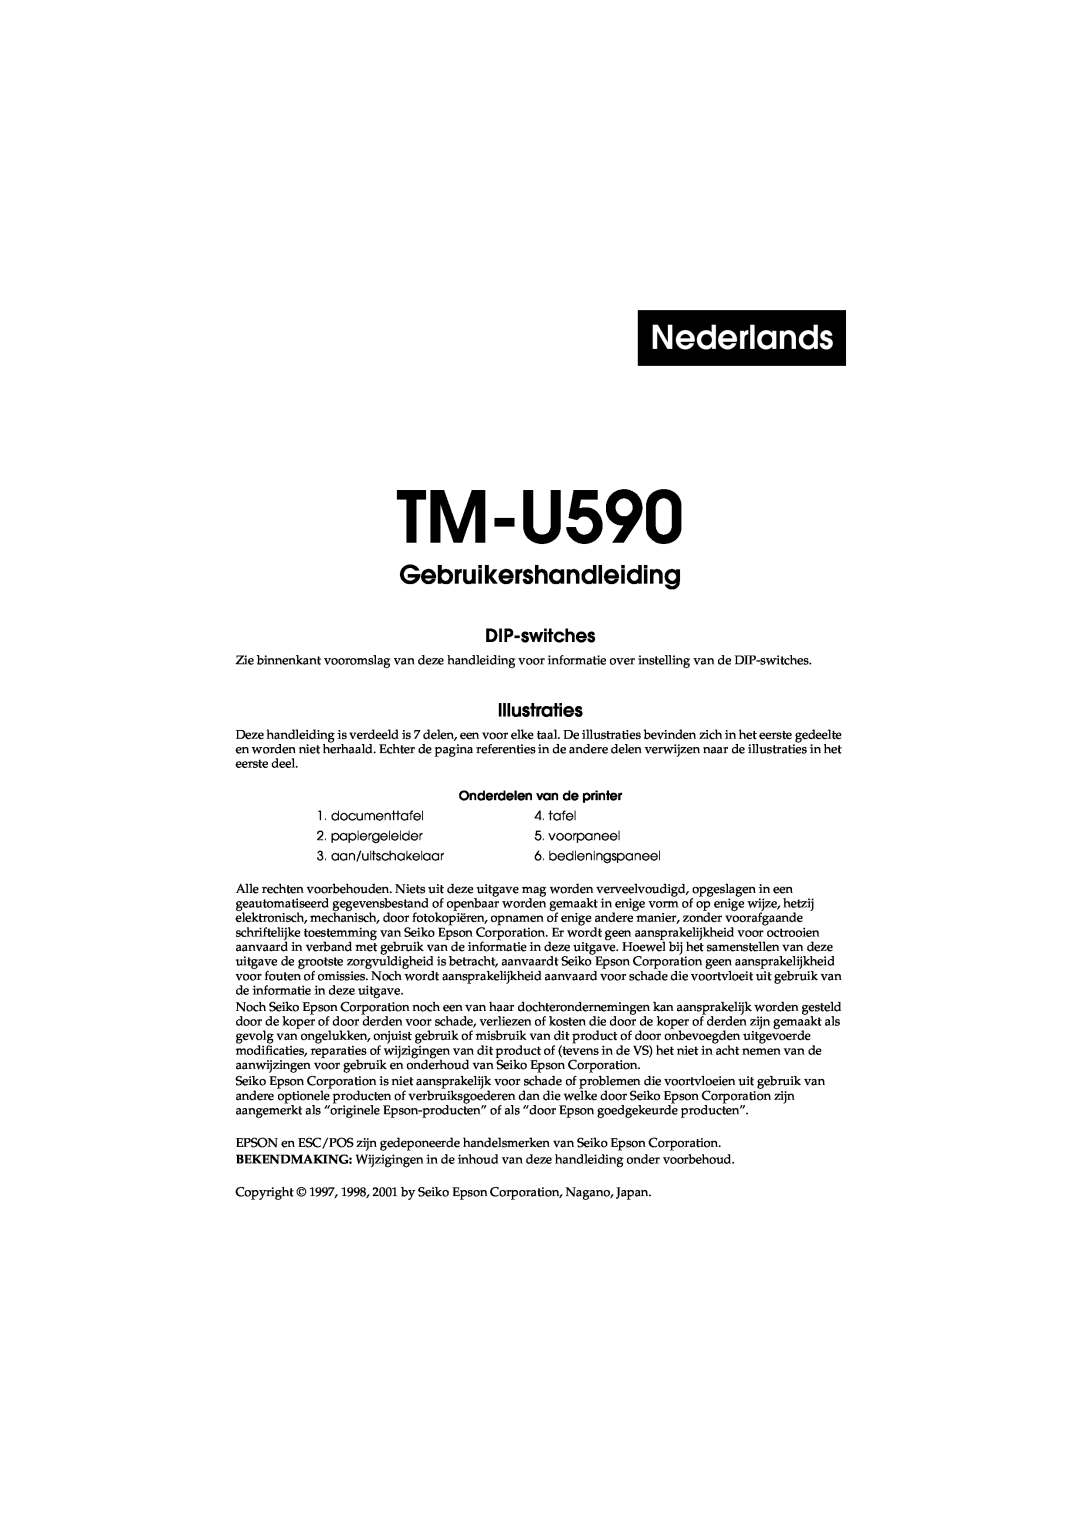 FARGO electronic user manual Nederlands, Gebruikershandleiding voor de TM-U590, DIP-switches, Illustraties 